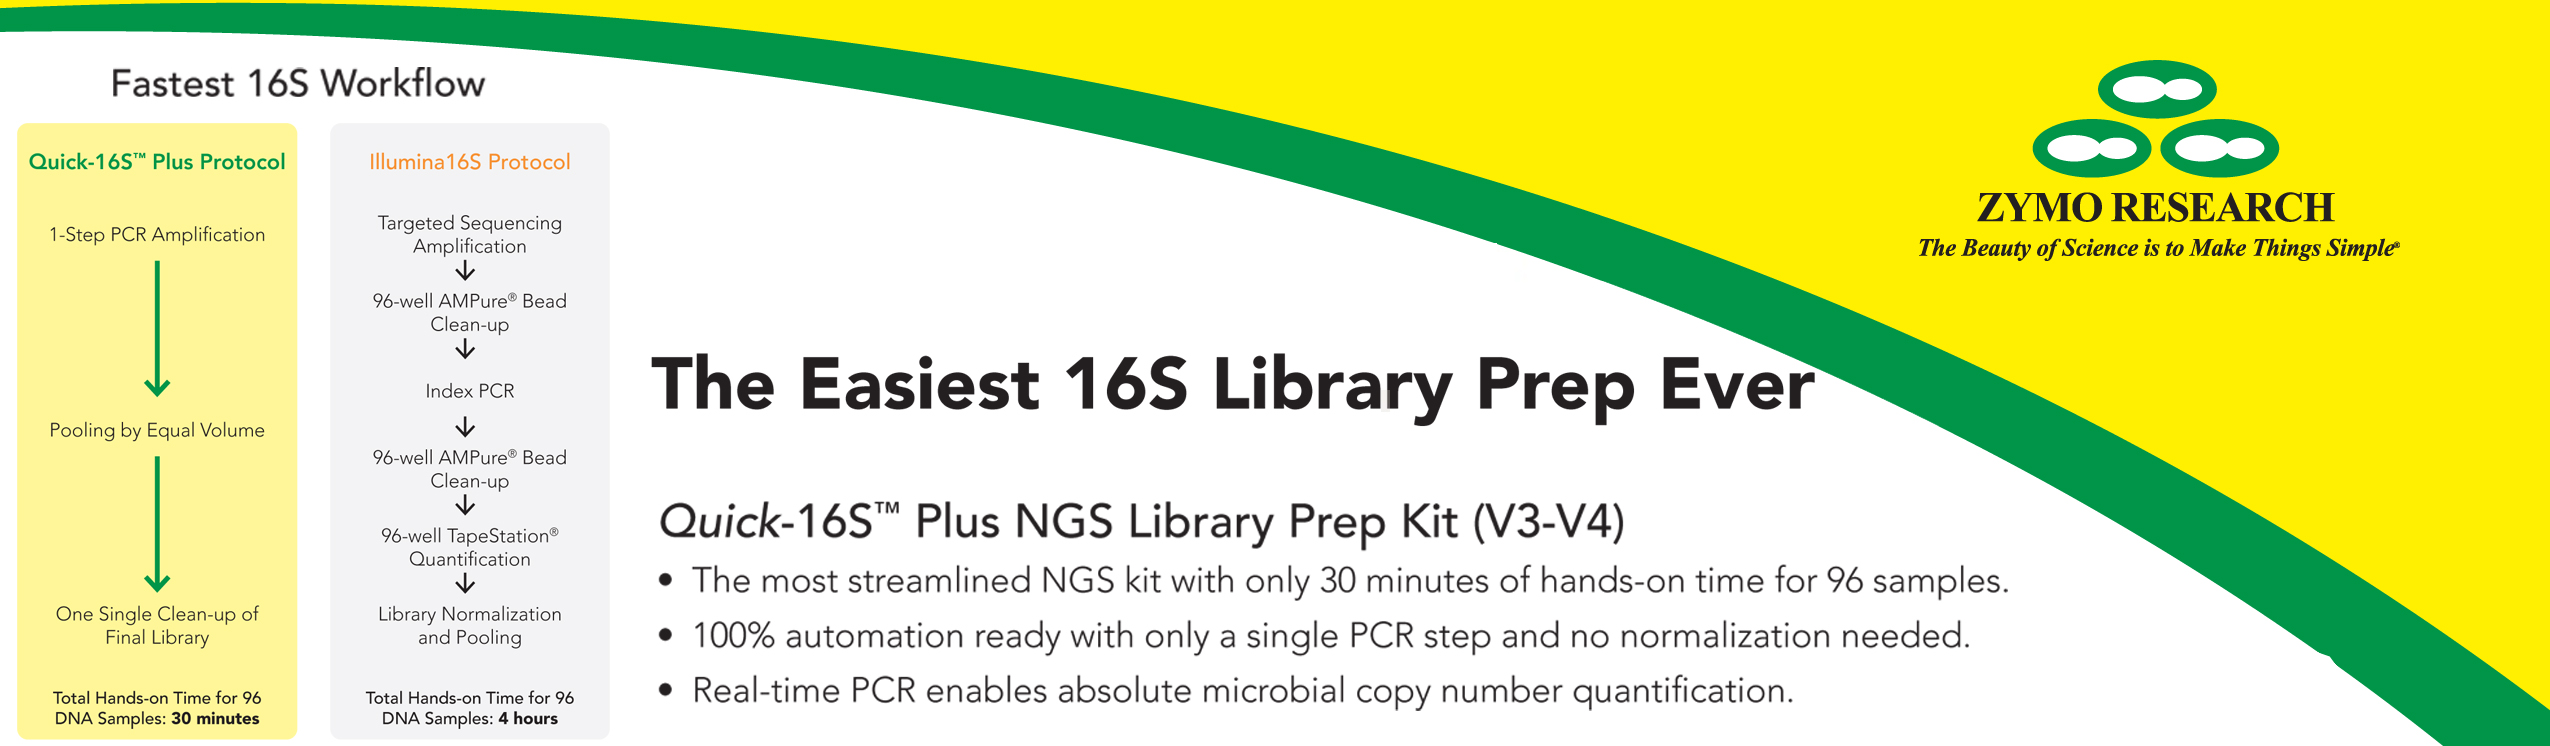 Quick-16S Plus NGS Library Prep Kit (V3-V4)